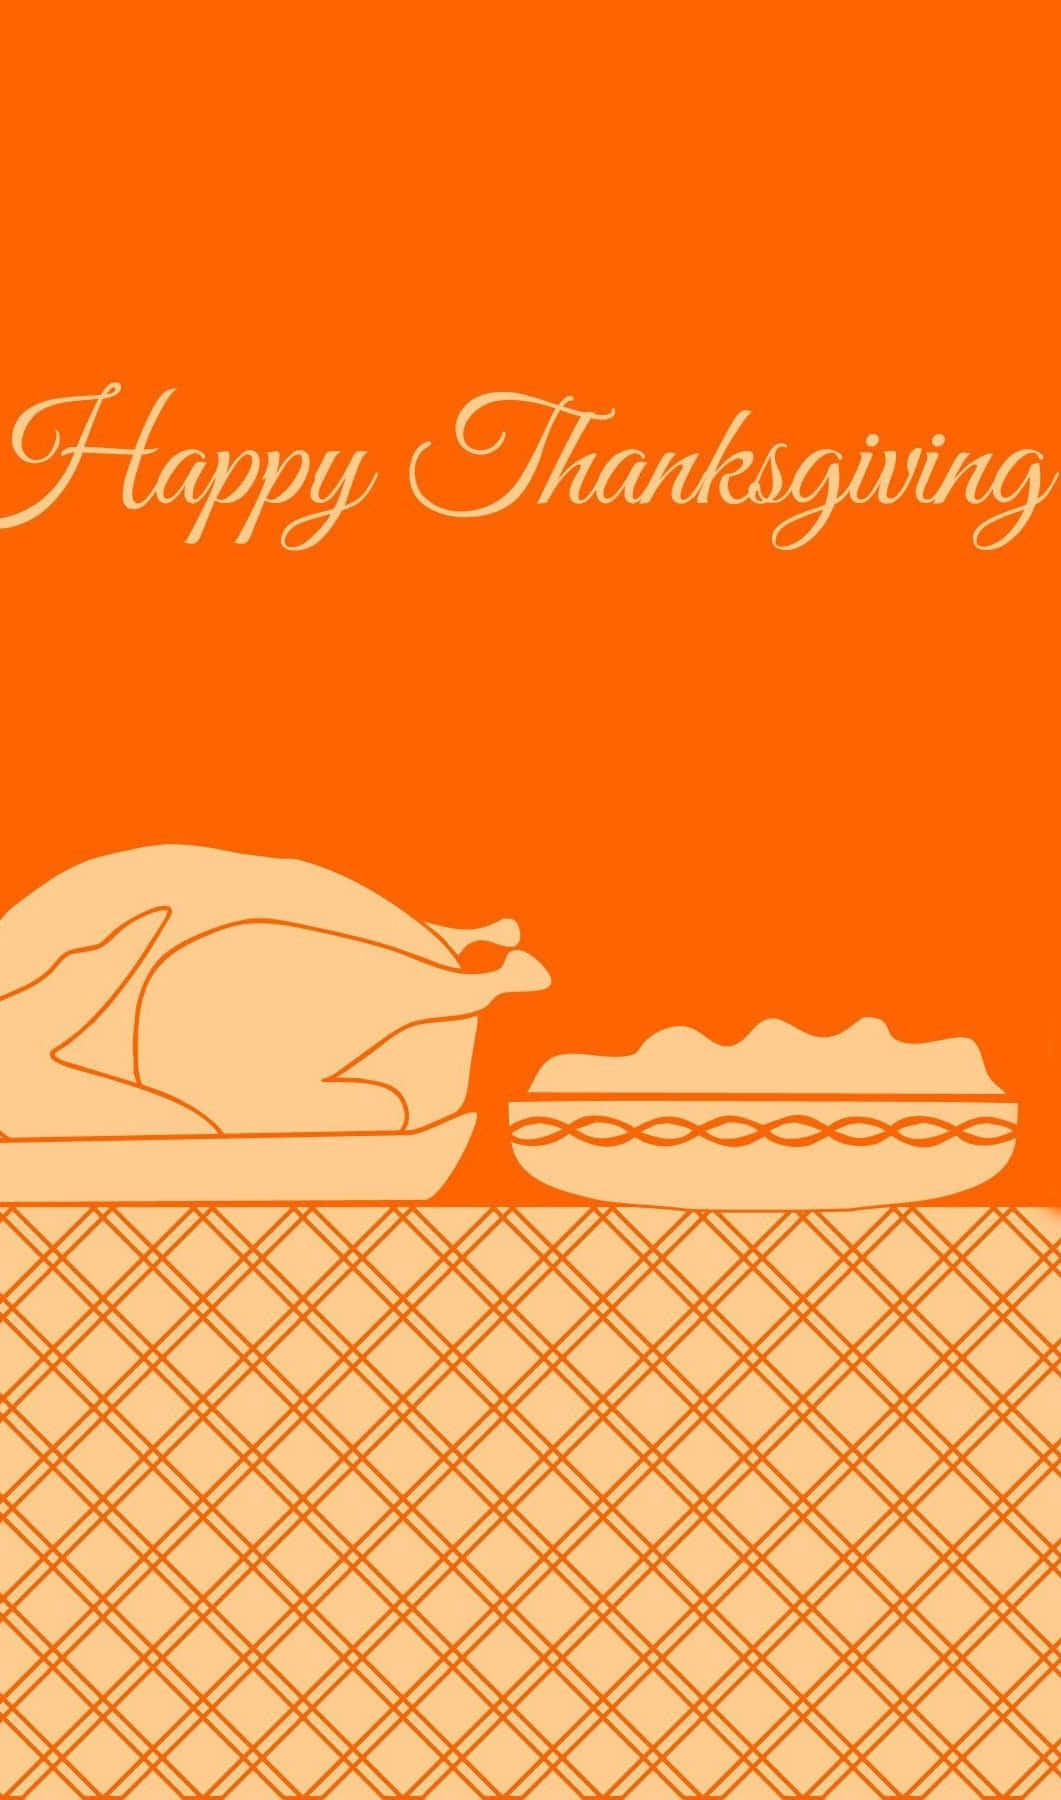 Nyd Thanksgiving med dine yndlingsmennesker selvom du er miles væk. Wallpaper